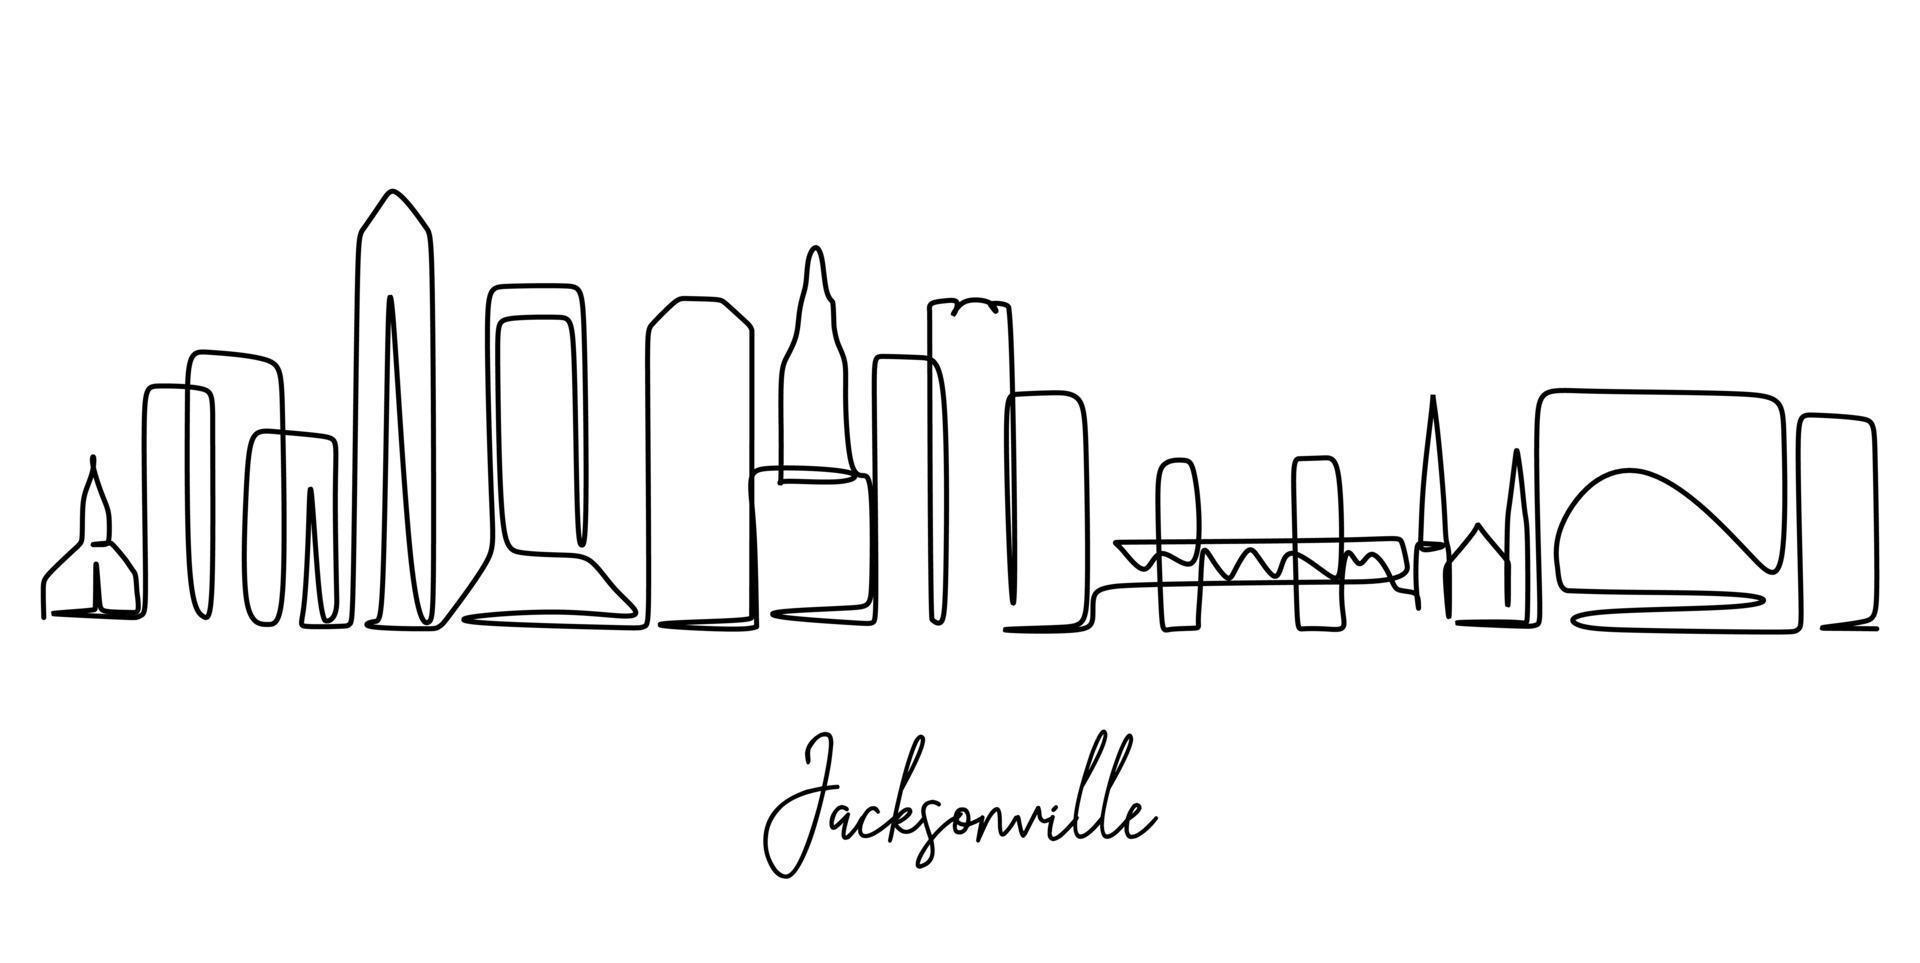 enda kontinuerlig linjeritning av jacksonville city skyline, usa. berömda stadsskrapa och landskap. världsresor koncept hem vägg dekor affischtryck. moderna en rad rita design vektorillustration vektor